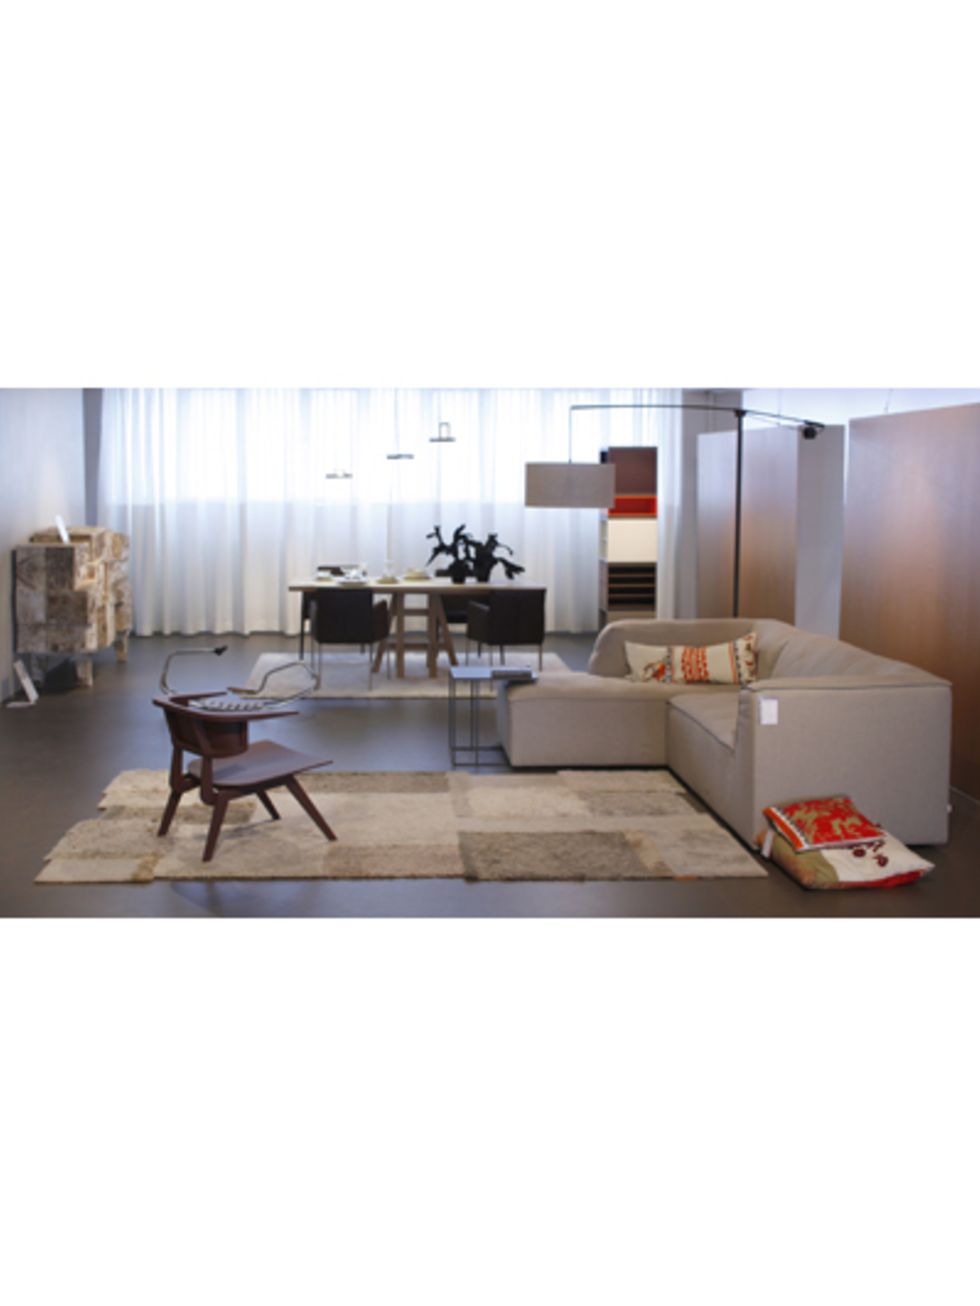 Floor, Interior design, Room, Furniture, Table, Flooring, Couch, Coffee table, Interior design, Home, 